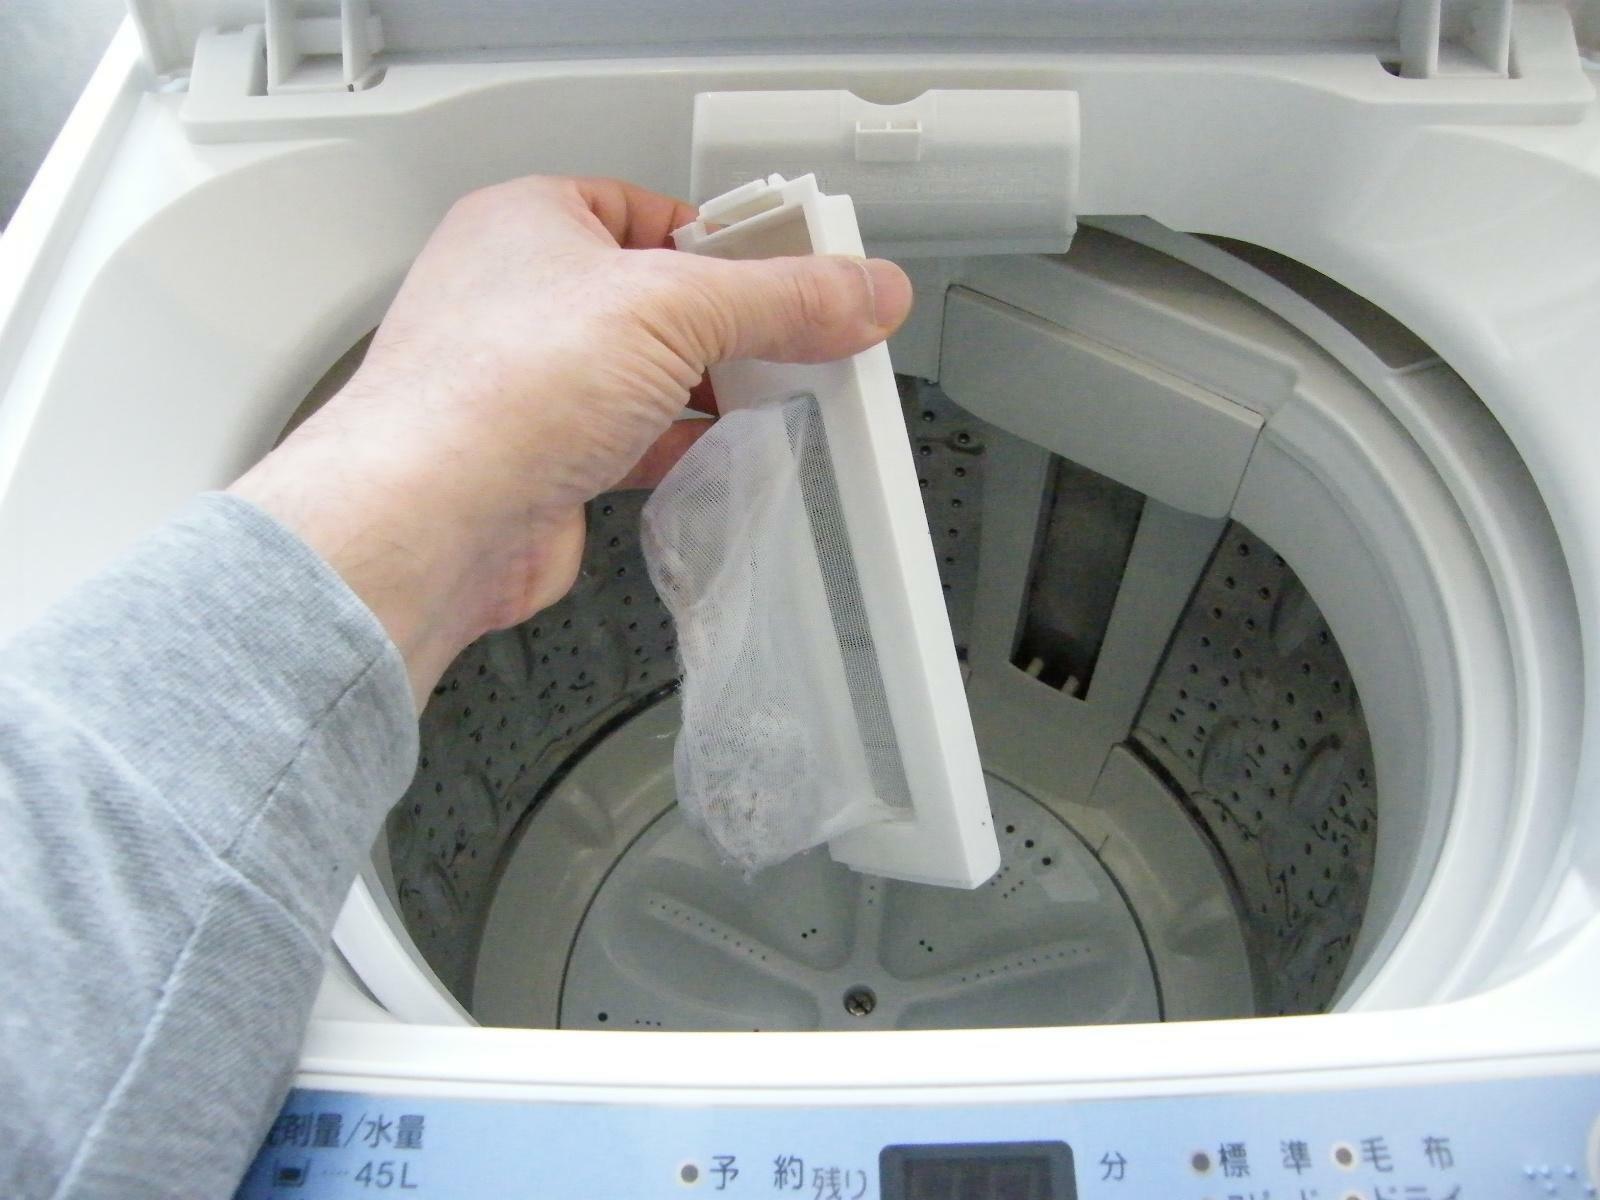 フィルター掃除は、洗濯槽の黒カビ防止にも効果◎